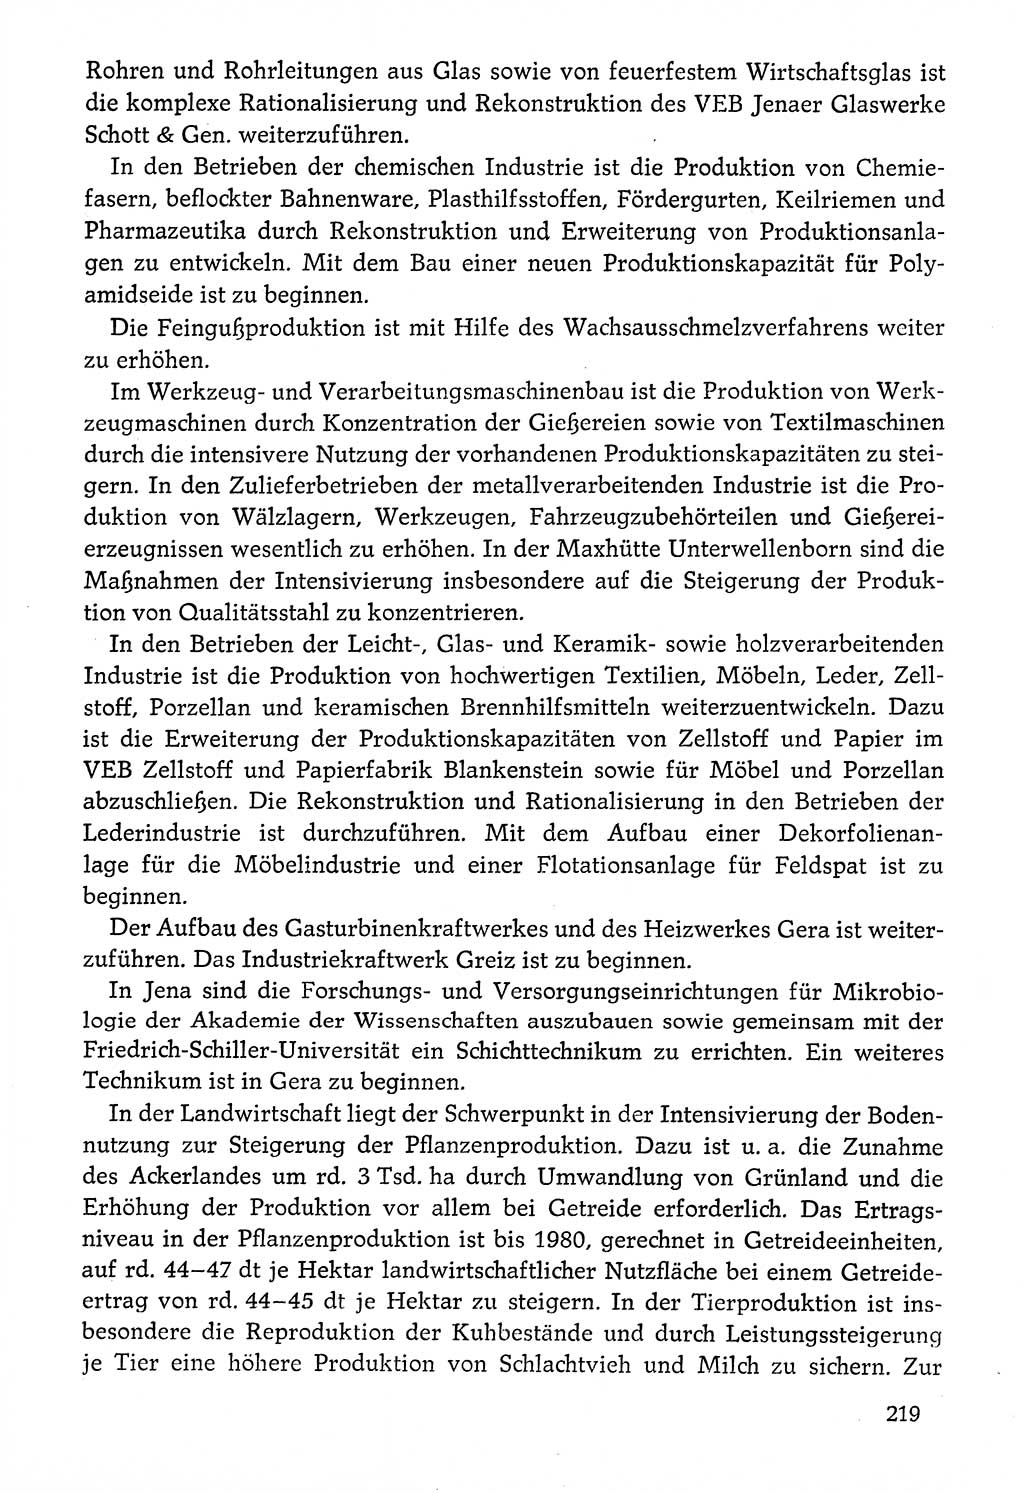 Dokumente der Sozialistischen Einheitspartei Deutschlands (SED) [Deutsche Demokratische Republik (DDR)] 1976-1977, Seite 219 (Dok. SED DDR 1976-1977, S. 219)